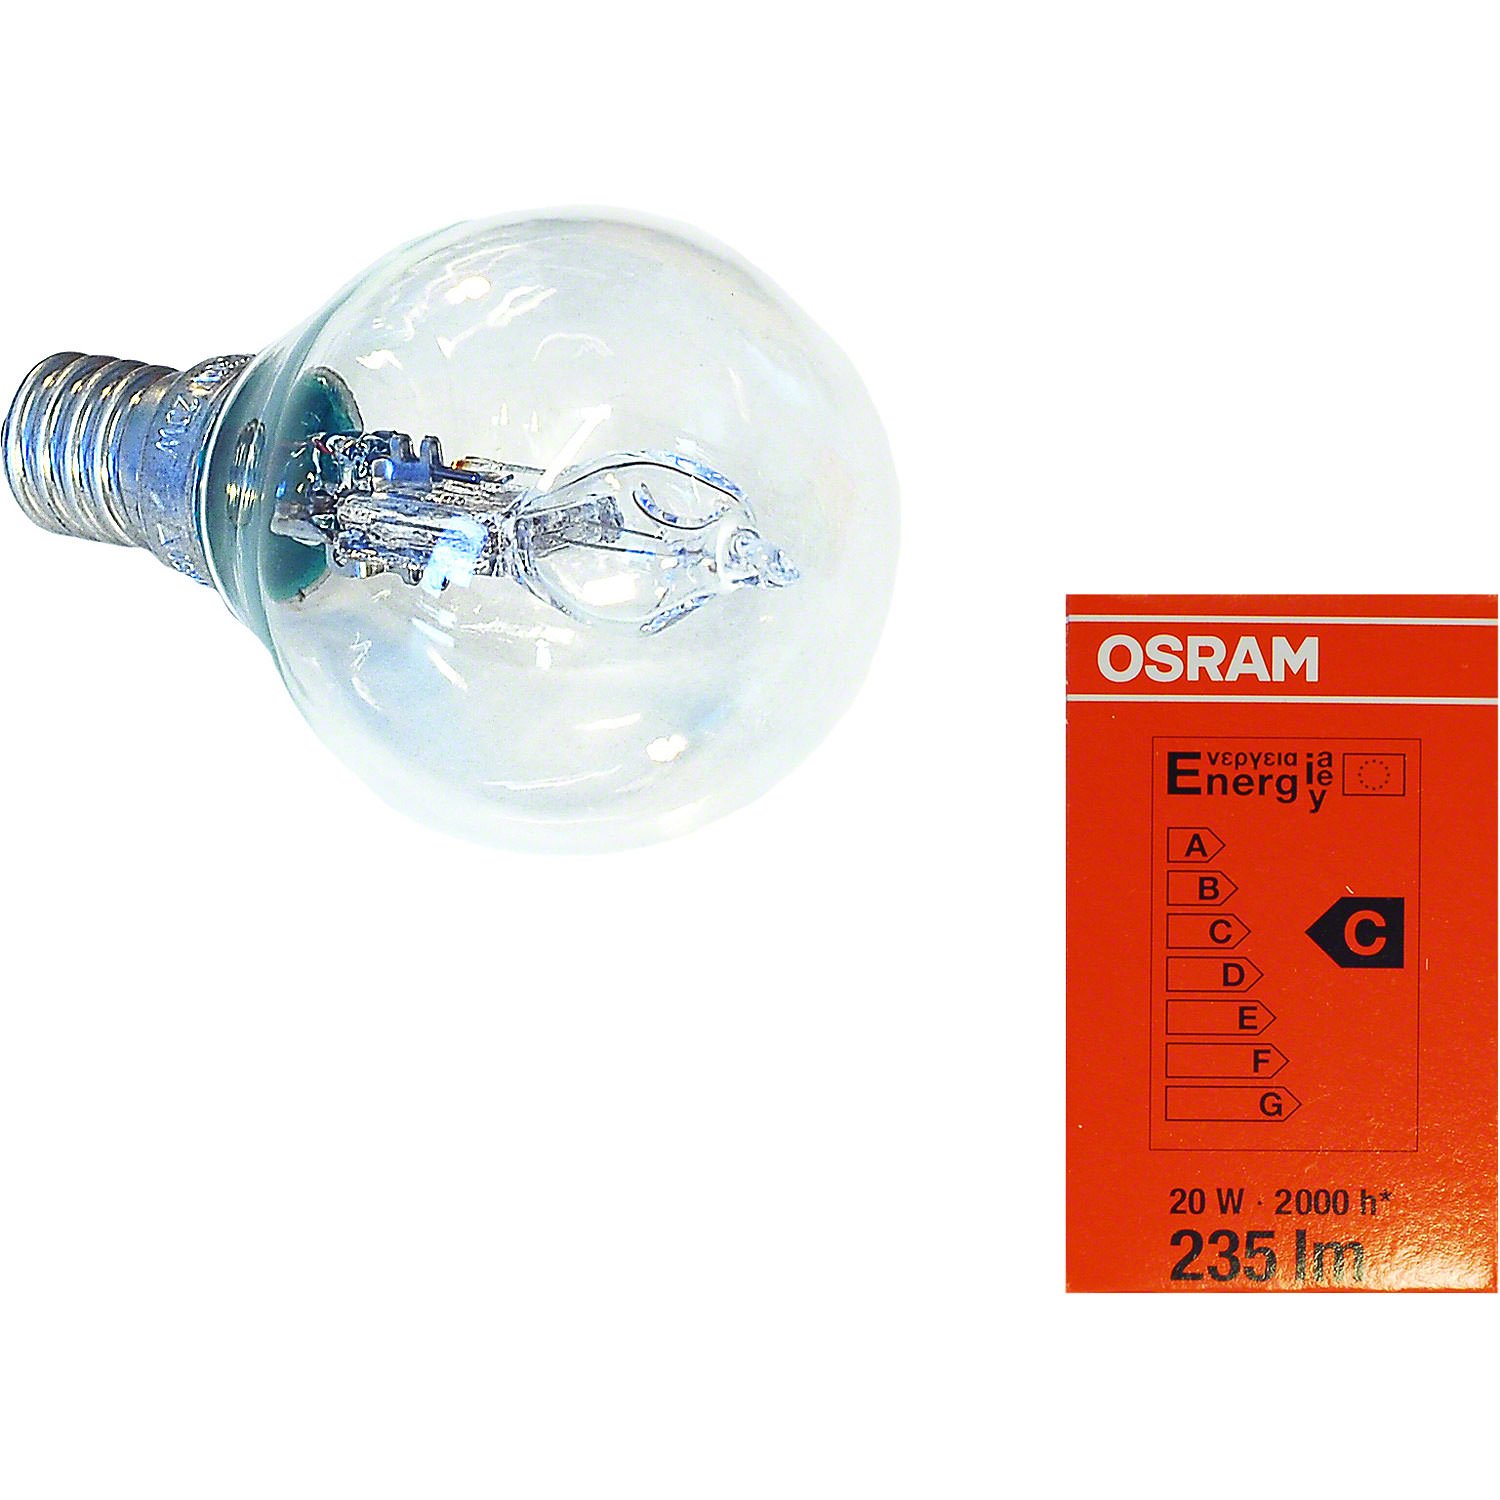 Halogen Light Bulb for Indoor Stars 29-00-I4 Bis 29-00-I8, E14